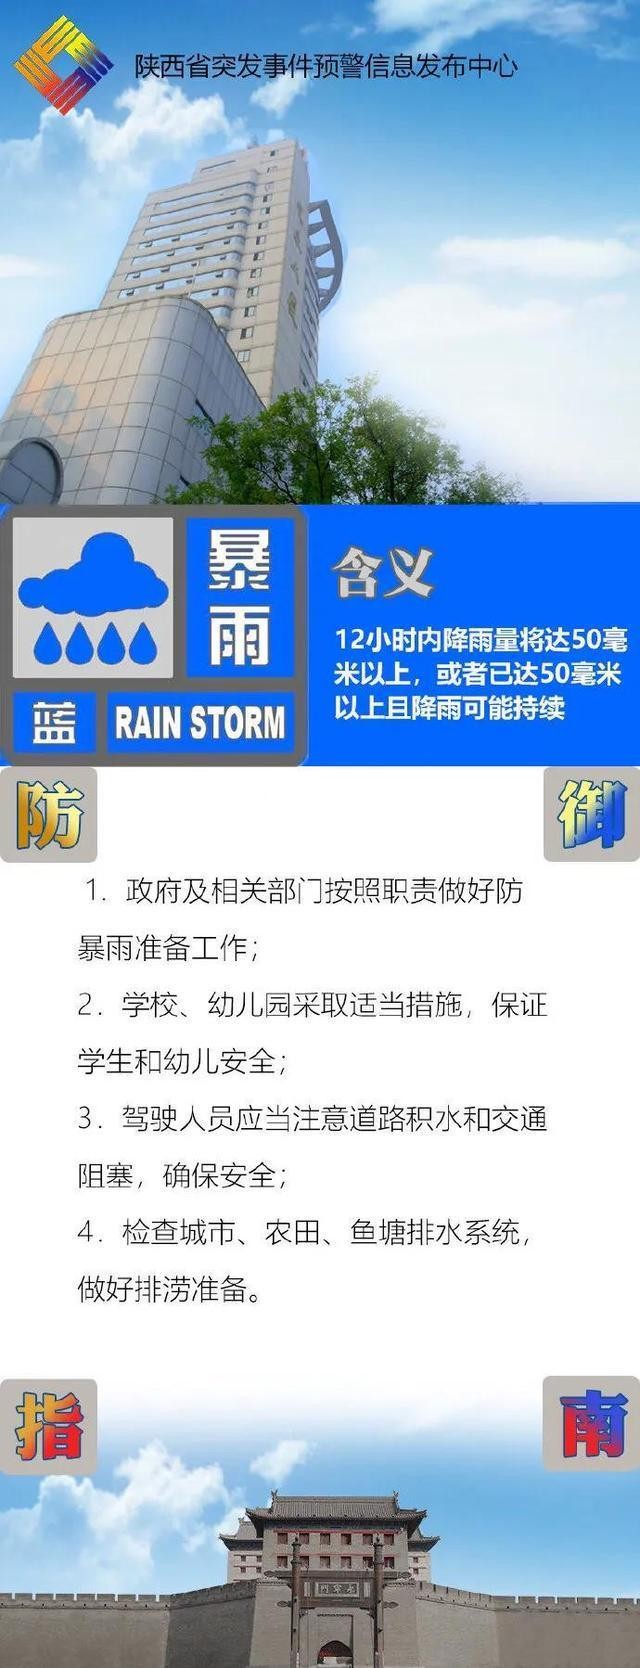 陕西省发布暴雨蓝色预警